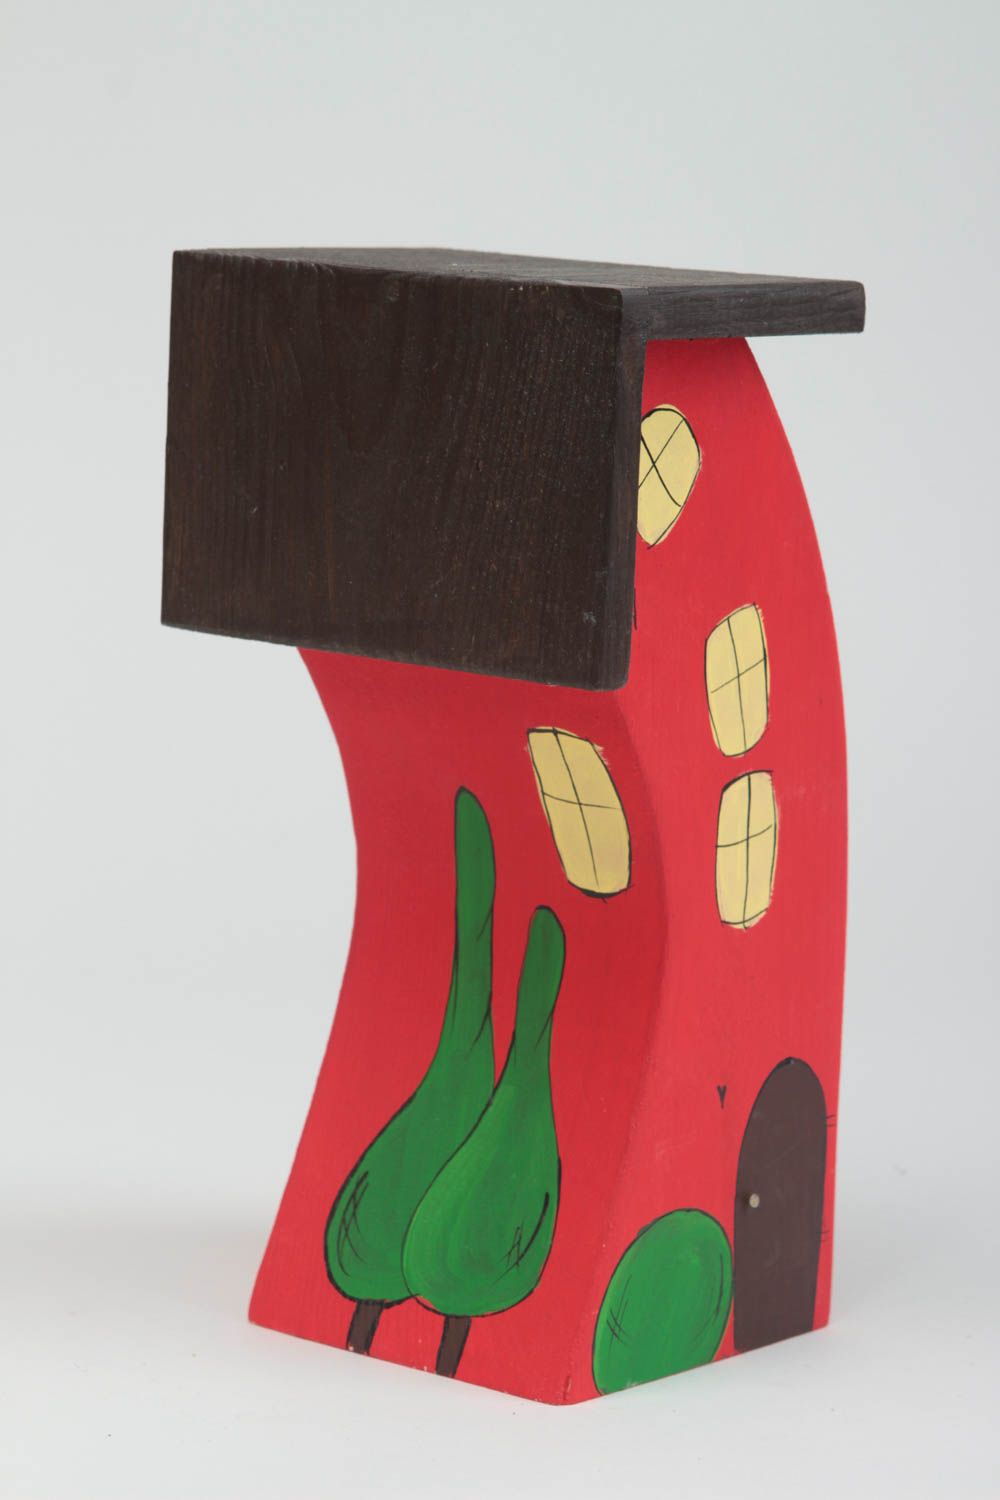 Фигурка из дерева домик высокий яркий красный с окошками красивый ручной работы фото 2